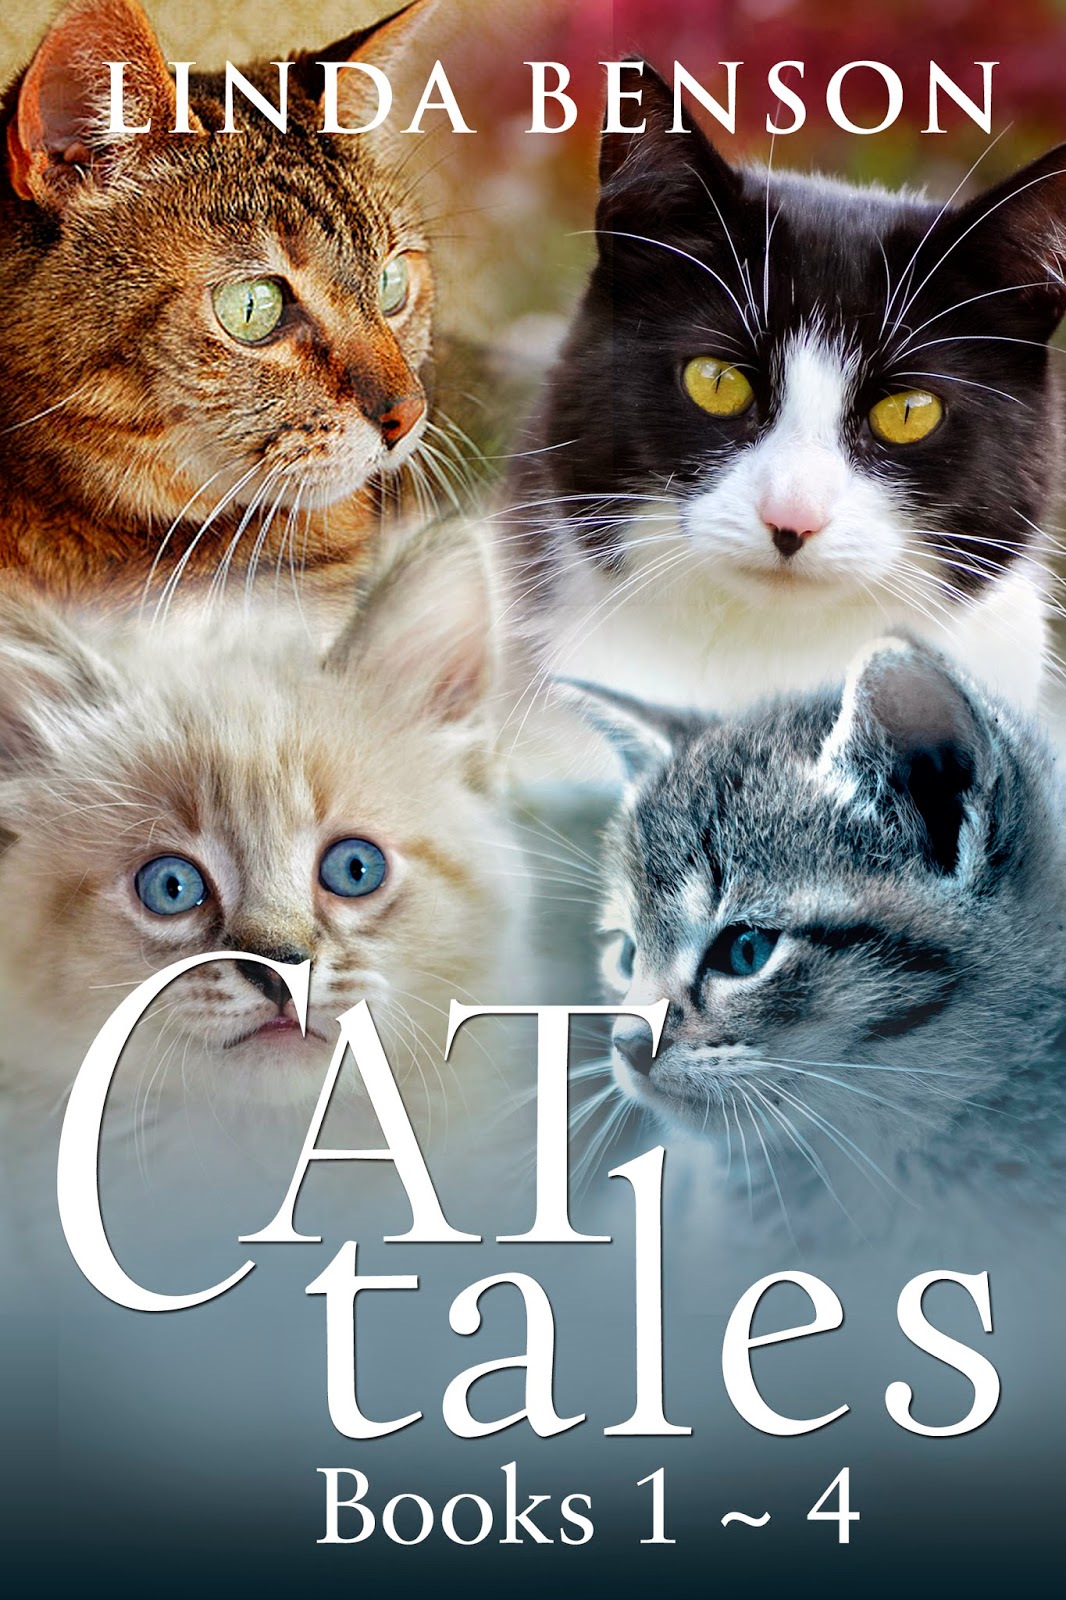 http://www.amazon.com/Cat-Tales-Books-Linda-Benson-ebook/dp/B00P5KMD28/ref=sr_1_2?s=digital-text&ie=UTF8&qid=1415129387&sr=1-2&keywords=Cat+Tales